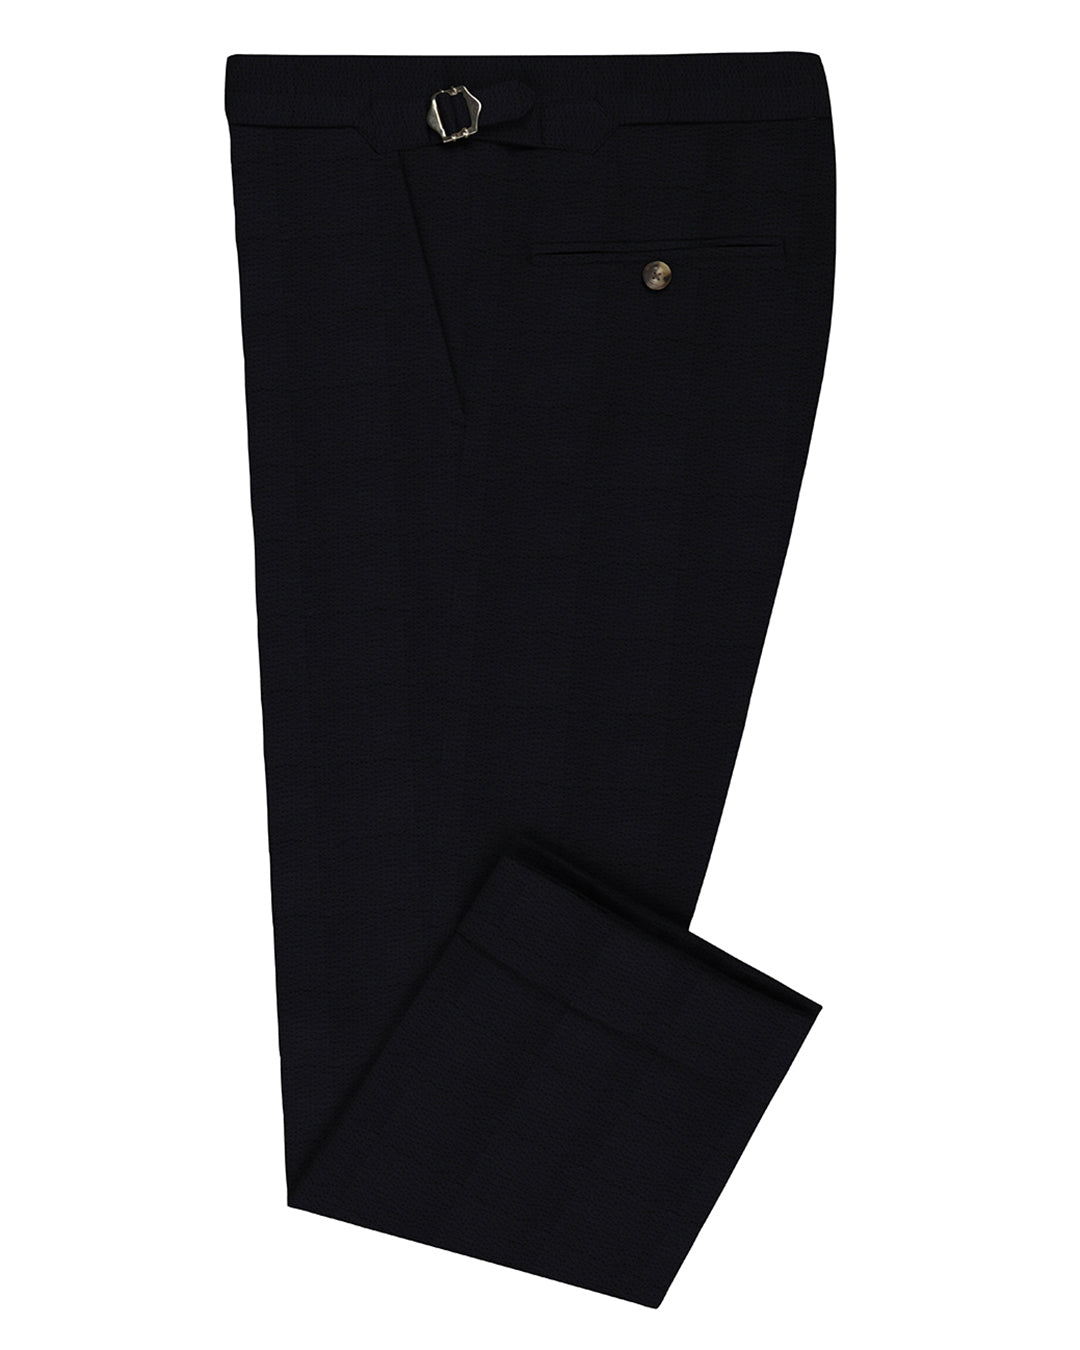 Black Seersucker Pants